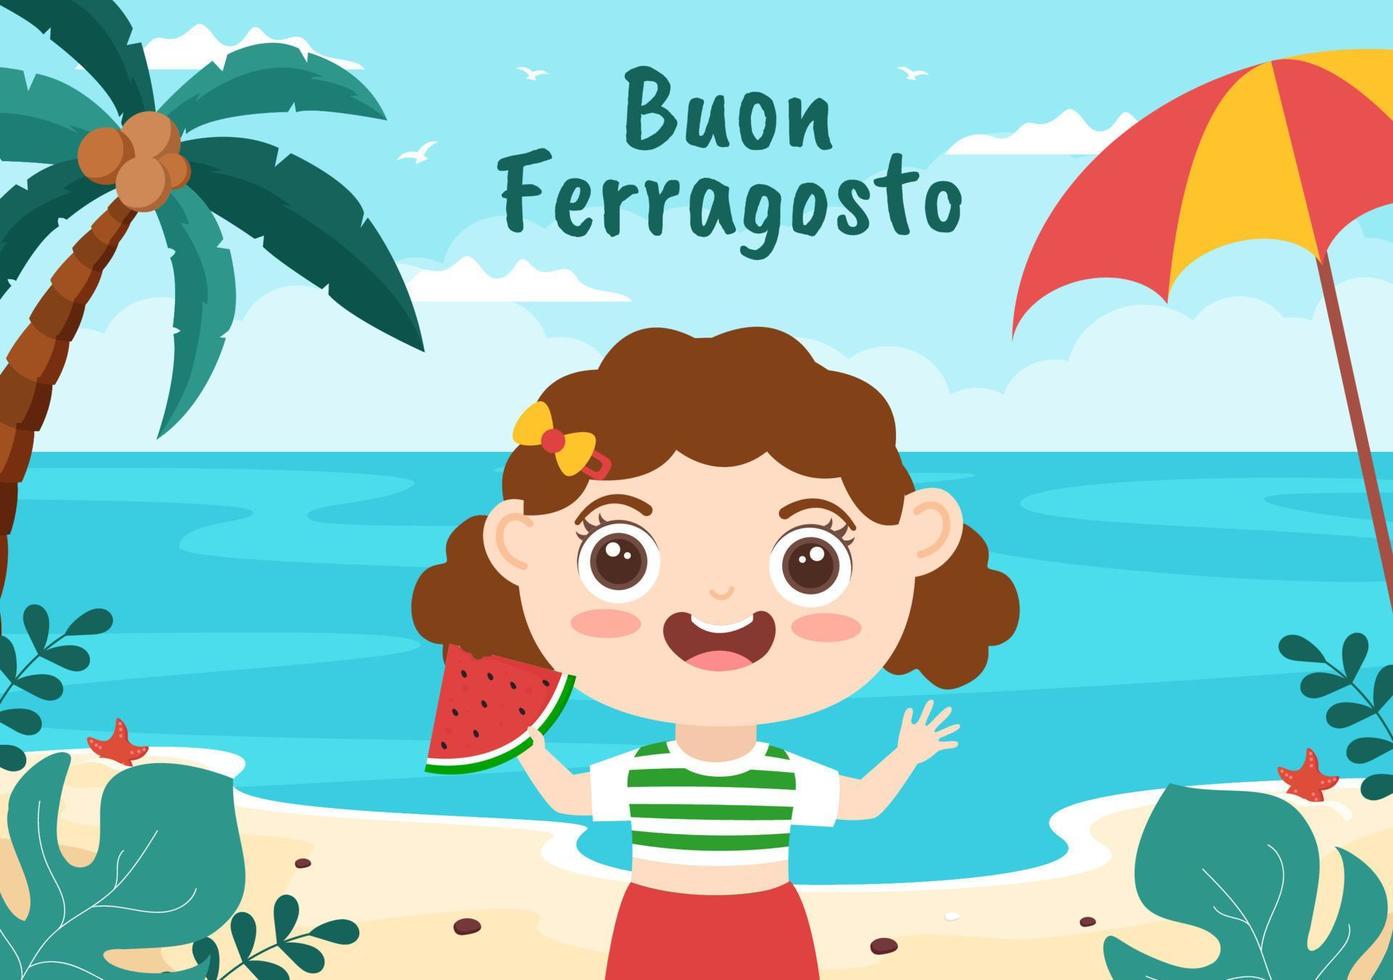 buon ferragosto festival estivo italiano in spiaggia fumetto illustrazione in un giorno festivo celebrato il 15 agosto in stile piatto design vettore